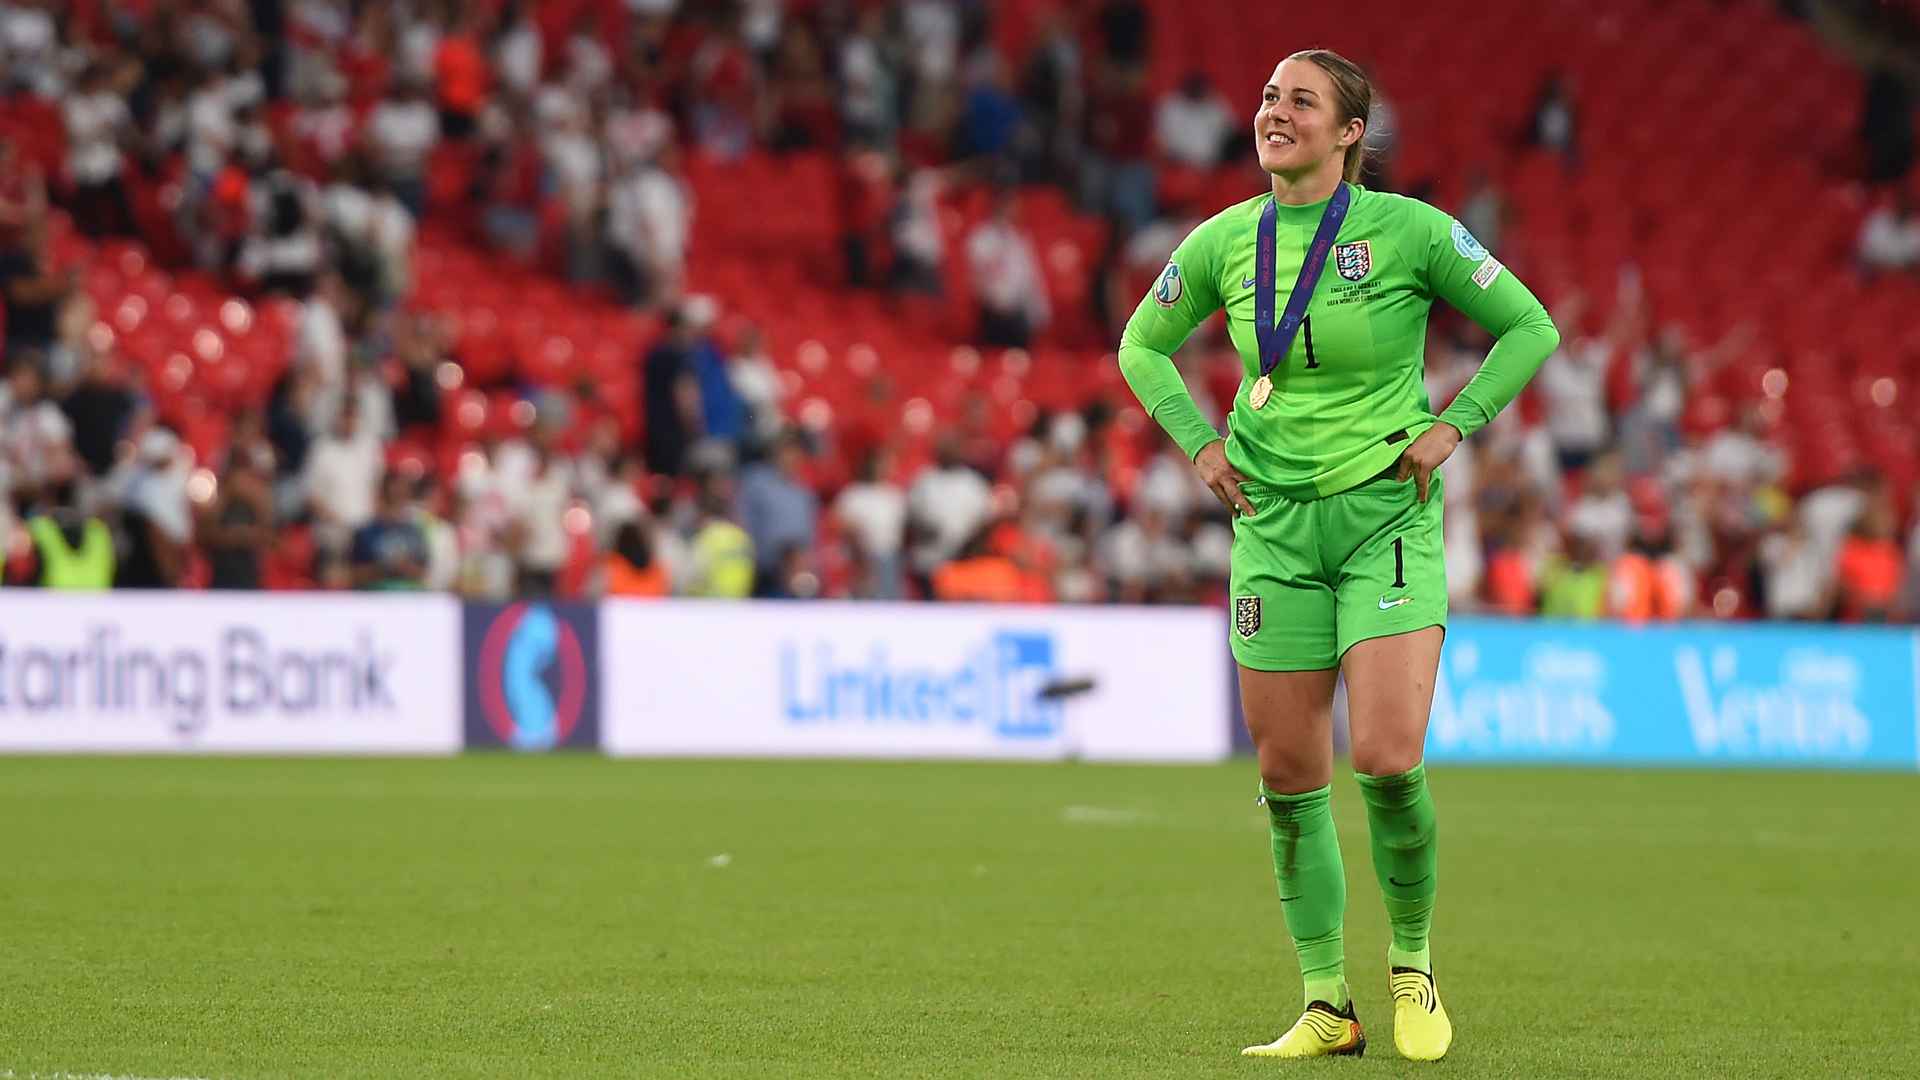 Man Utd goalkeeper Mary Earps named in Euro 2022 Team of the Tournament